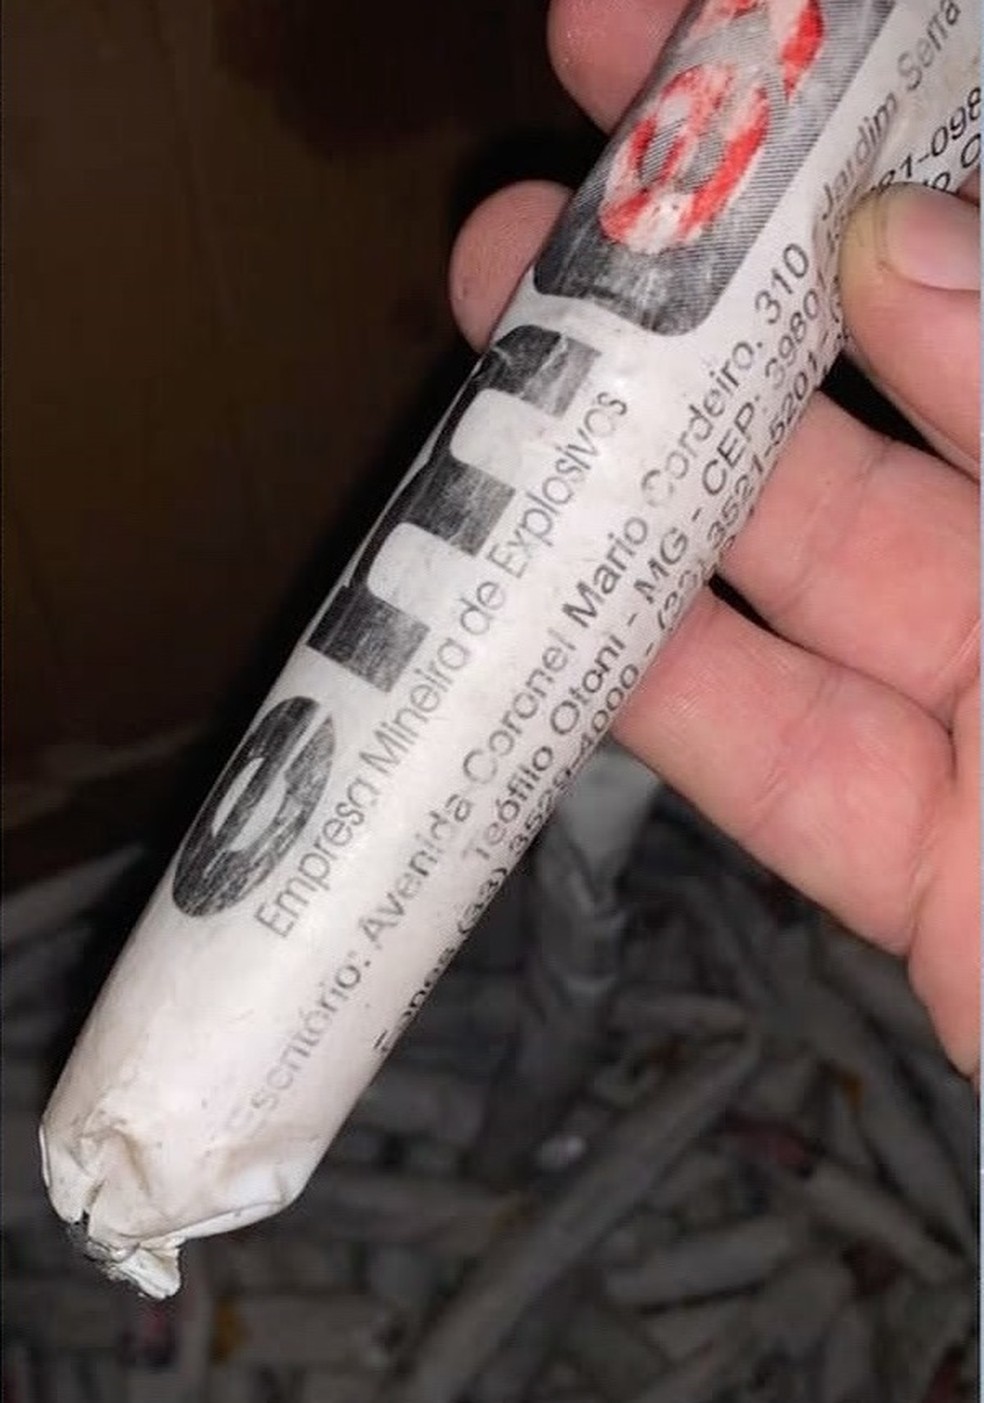 Bananas de dinamites e pinos de drogas foram encontrados na casa — Foto: TVCA/Reprodução